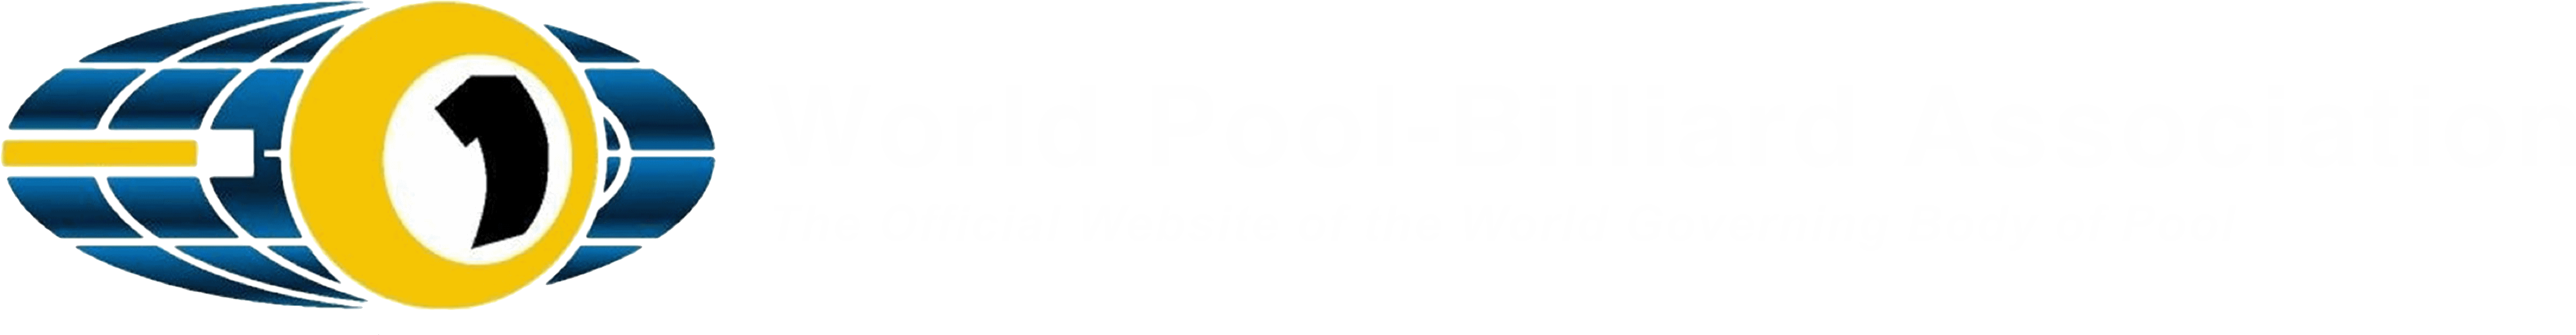 Wpa Pool - World Pool-billiard Association (6614x918)